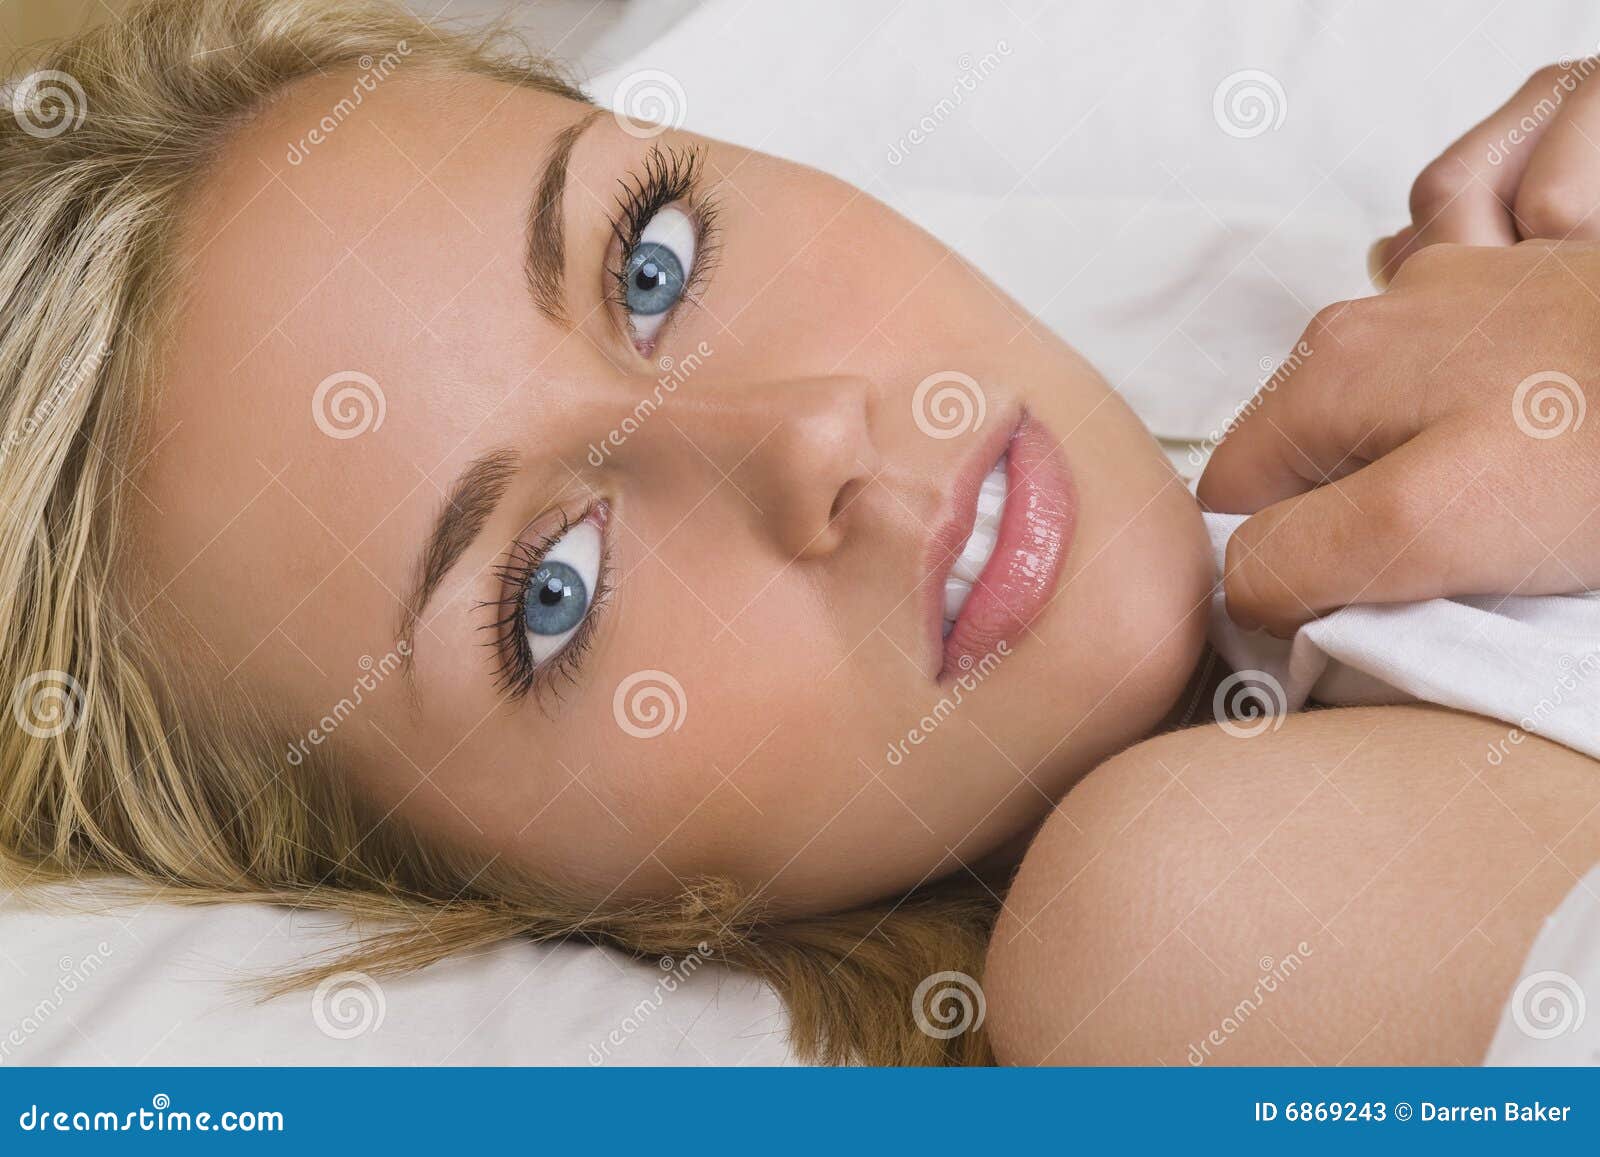 Doskonalić po prostu. Piękni łóżkowi blond błękitny zakrywający oczy kłaść przebijanie ciąć na arkusze oszałamiająco białych kobiet potomstwa